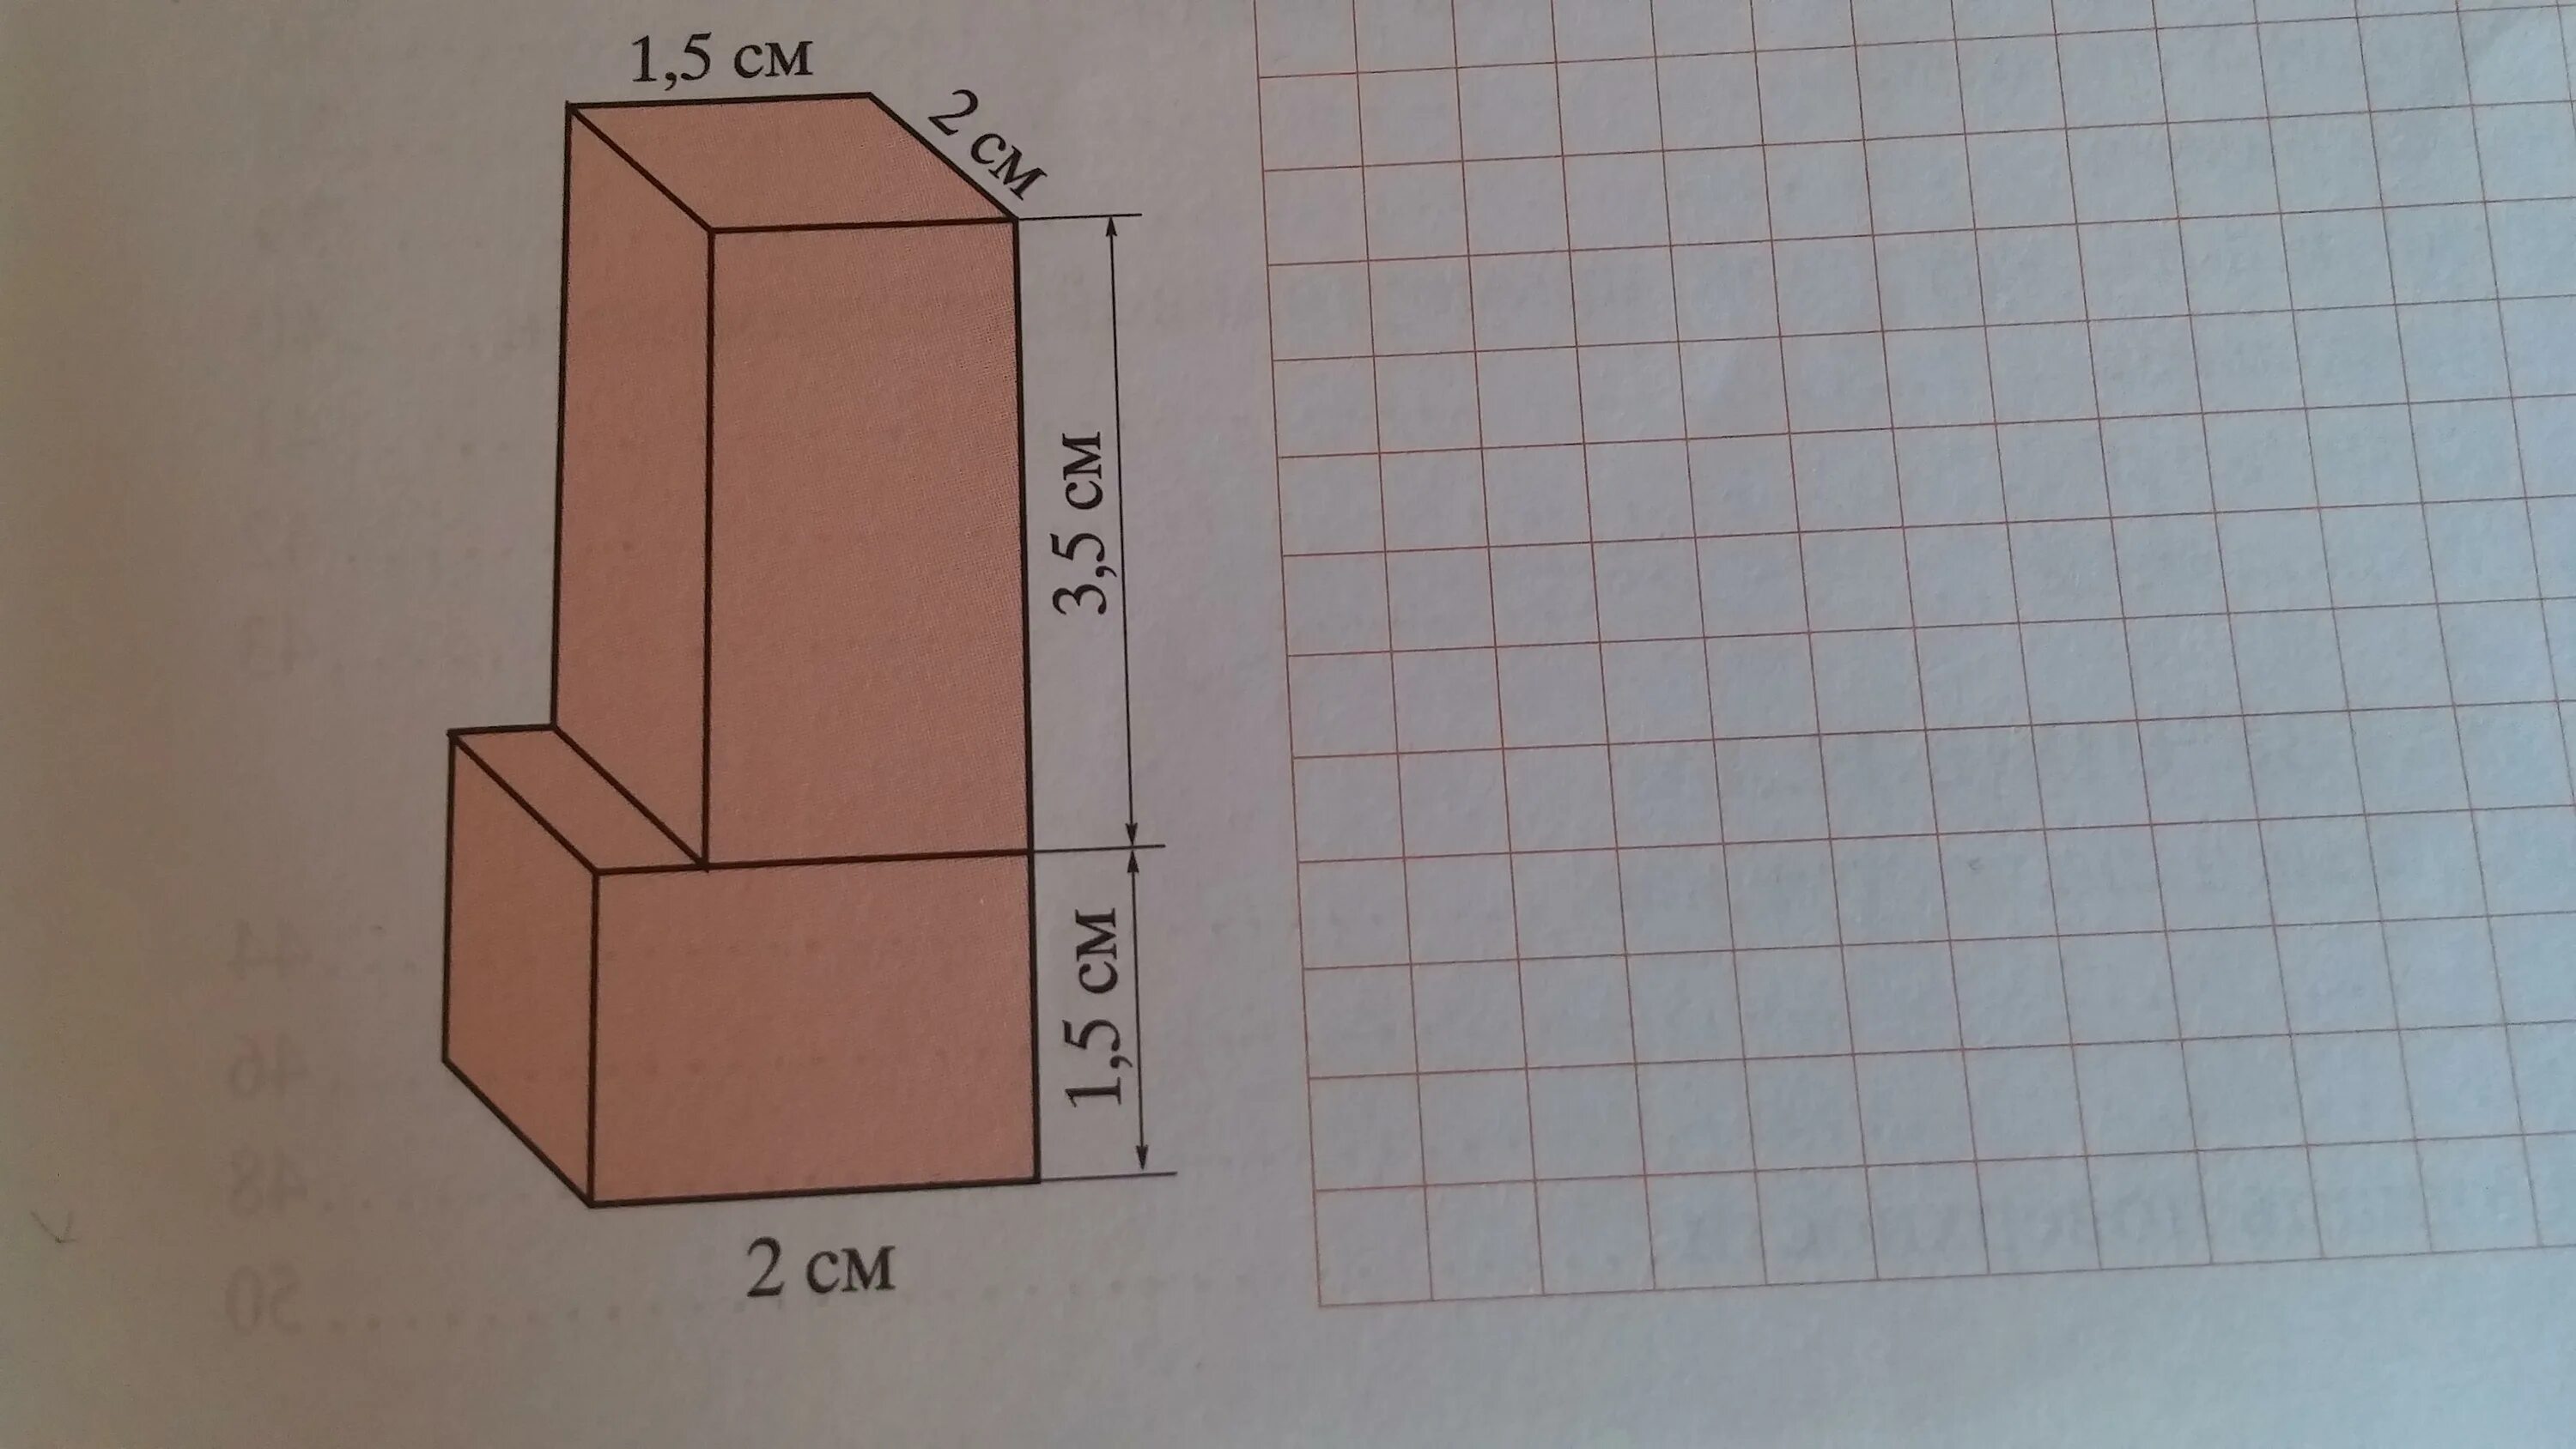 Из кубиков собрали параллелепипед. Вычислить площадь поверхности фигуры. Найдите объем фигуры составленной из прямоугольных параллелепипедов. Найдите площадь поверхности фигуры составленной из параллелепипедов. Макет нестандартной фигуры из прямоугольных параллелепипедов.